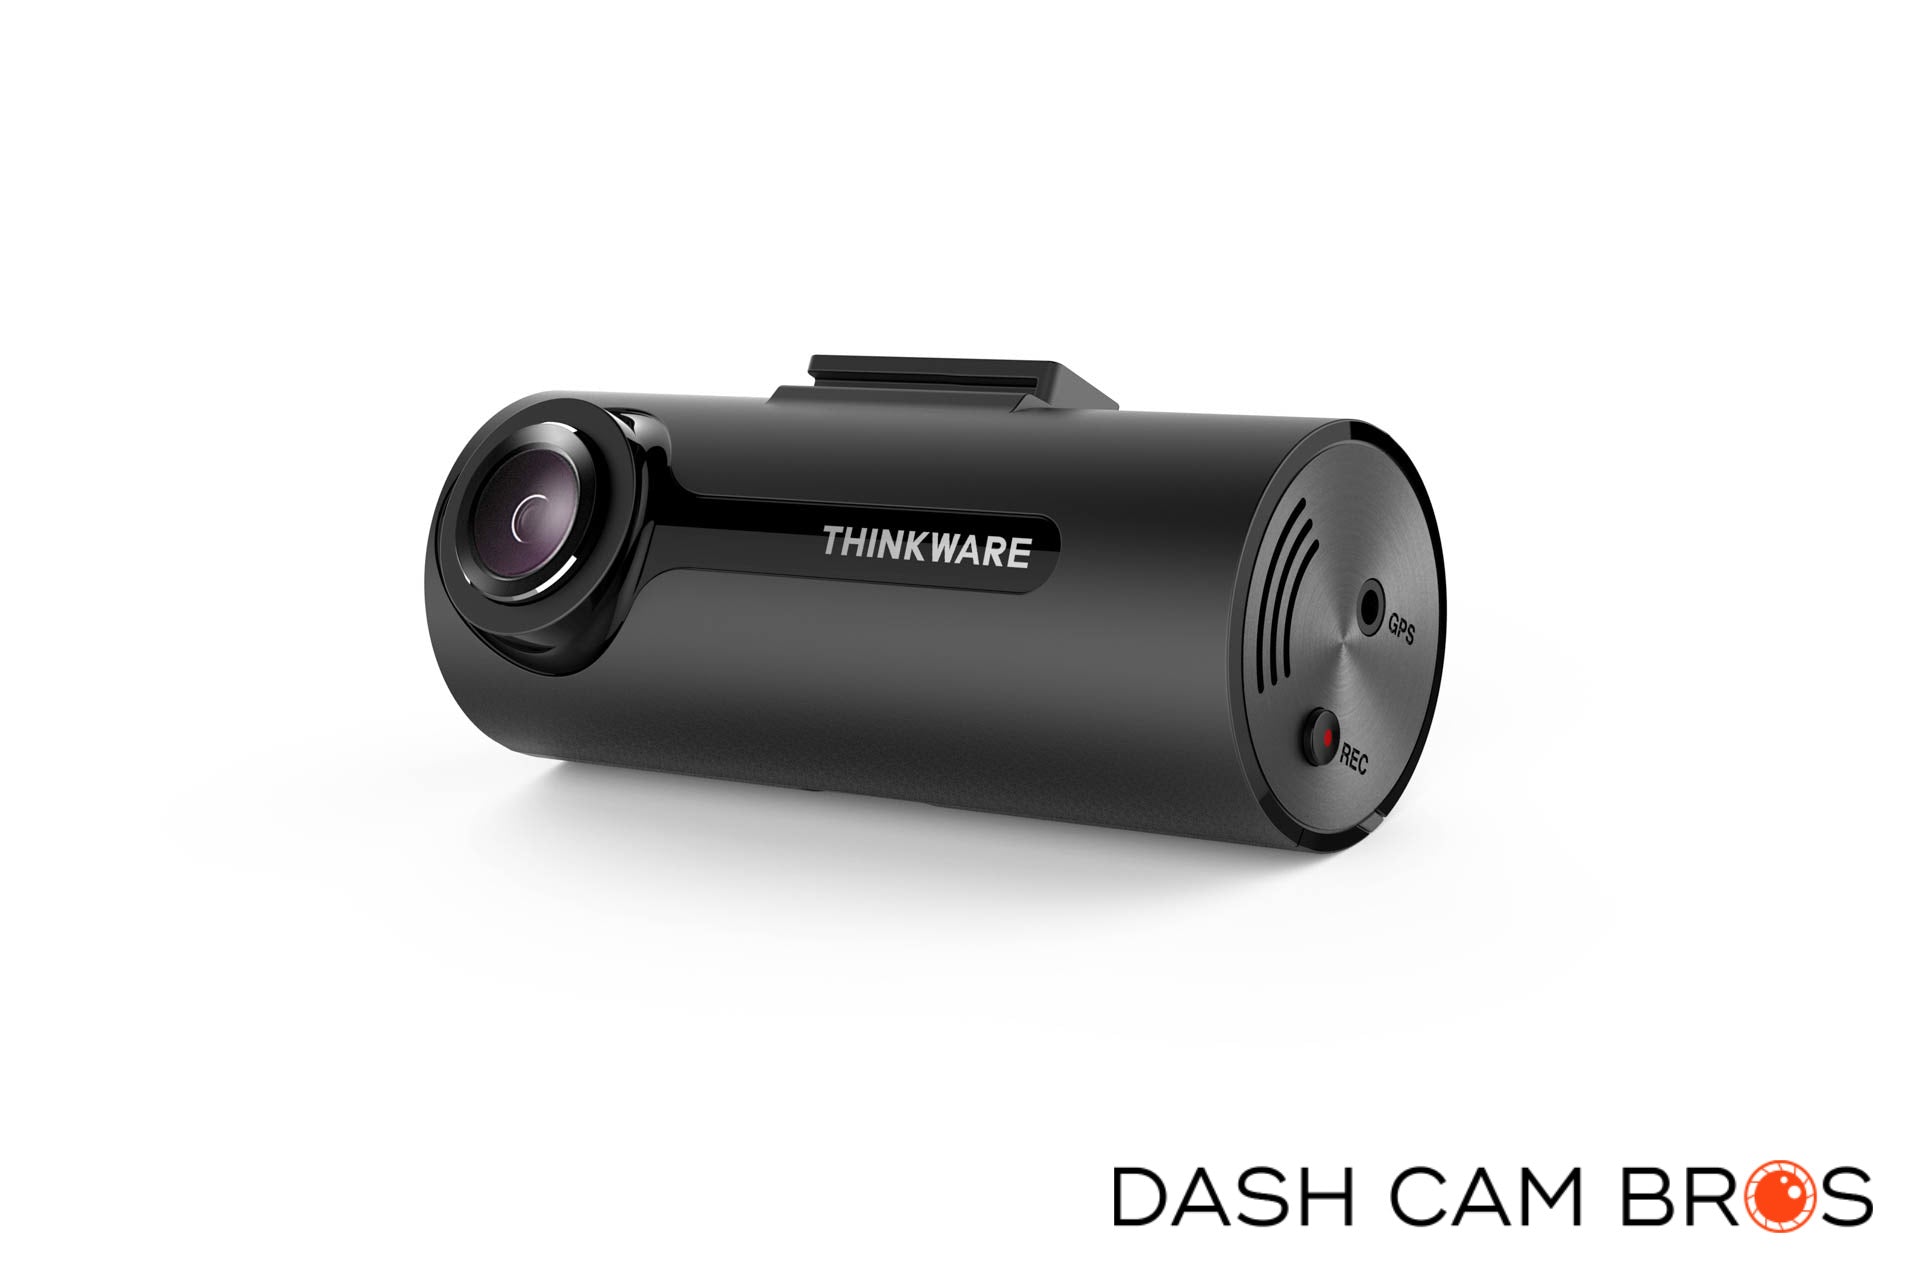 Dash Cam Comparison - Thinkware Store